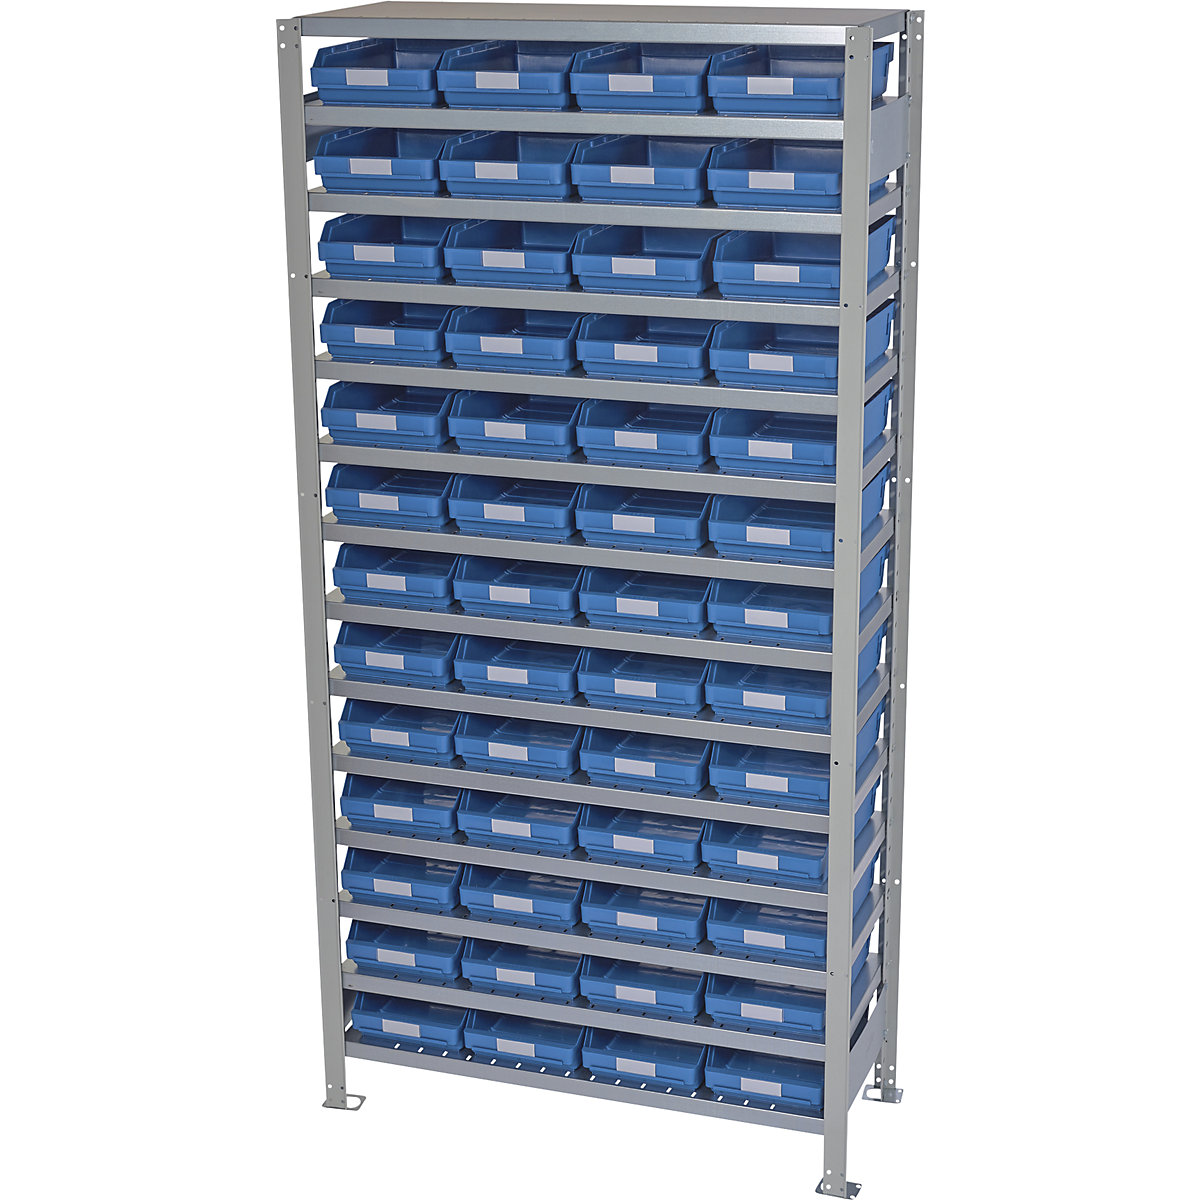 Összedugaszolós állvány dobozokkal – STEMO, állványmagasság 2100 mm, alapállvány, 500 mm mély, 52 kék doboz-35